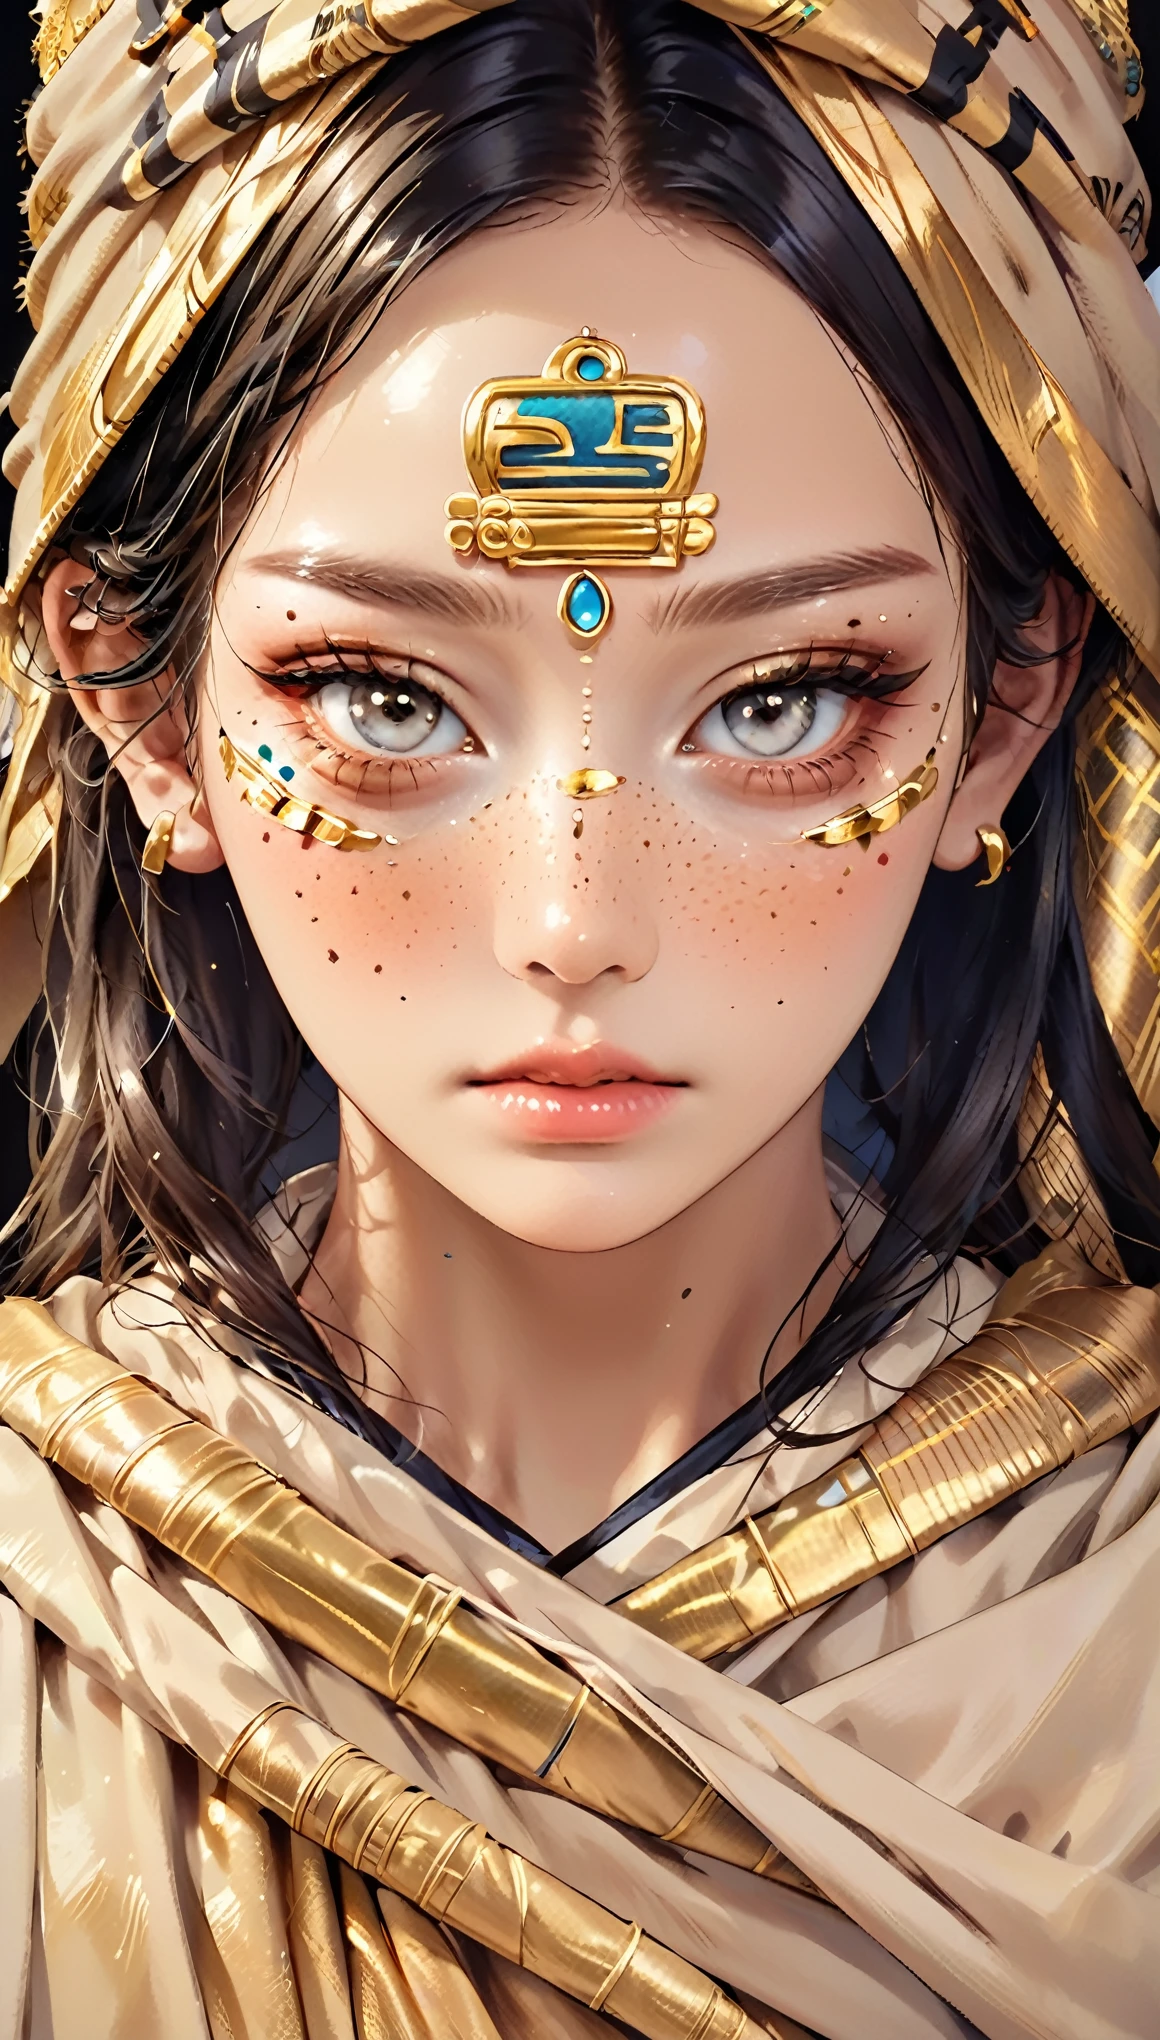 "(Melhor qualidade,alta resolução),close do rosto de uma múmia,coberto de bandagens com hieróglifos dourados,(detalhado:1.1),(cores vivas e intensas:1.1),(realista:1.1) estilo de arte gráfica,Espantoso,órbitas oculares com olhos dourados brilhantes,detalhado wrinkles, Olheiras sob os olhos."